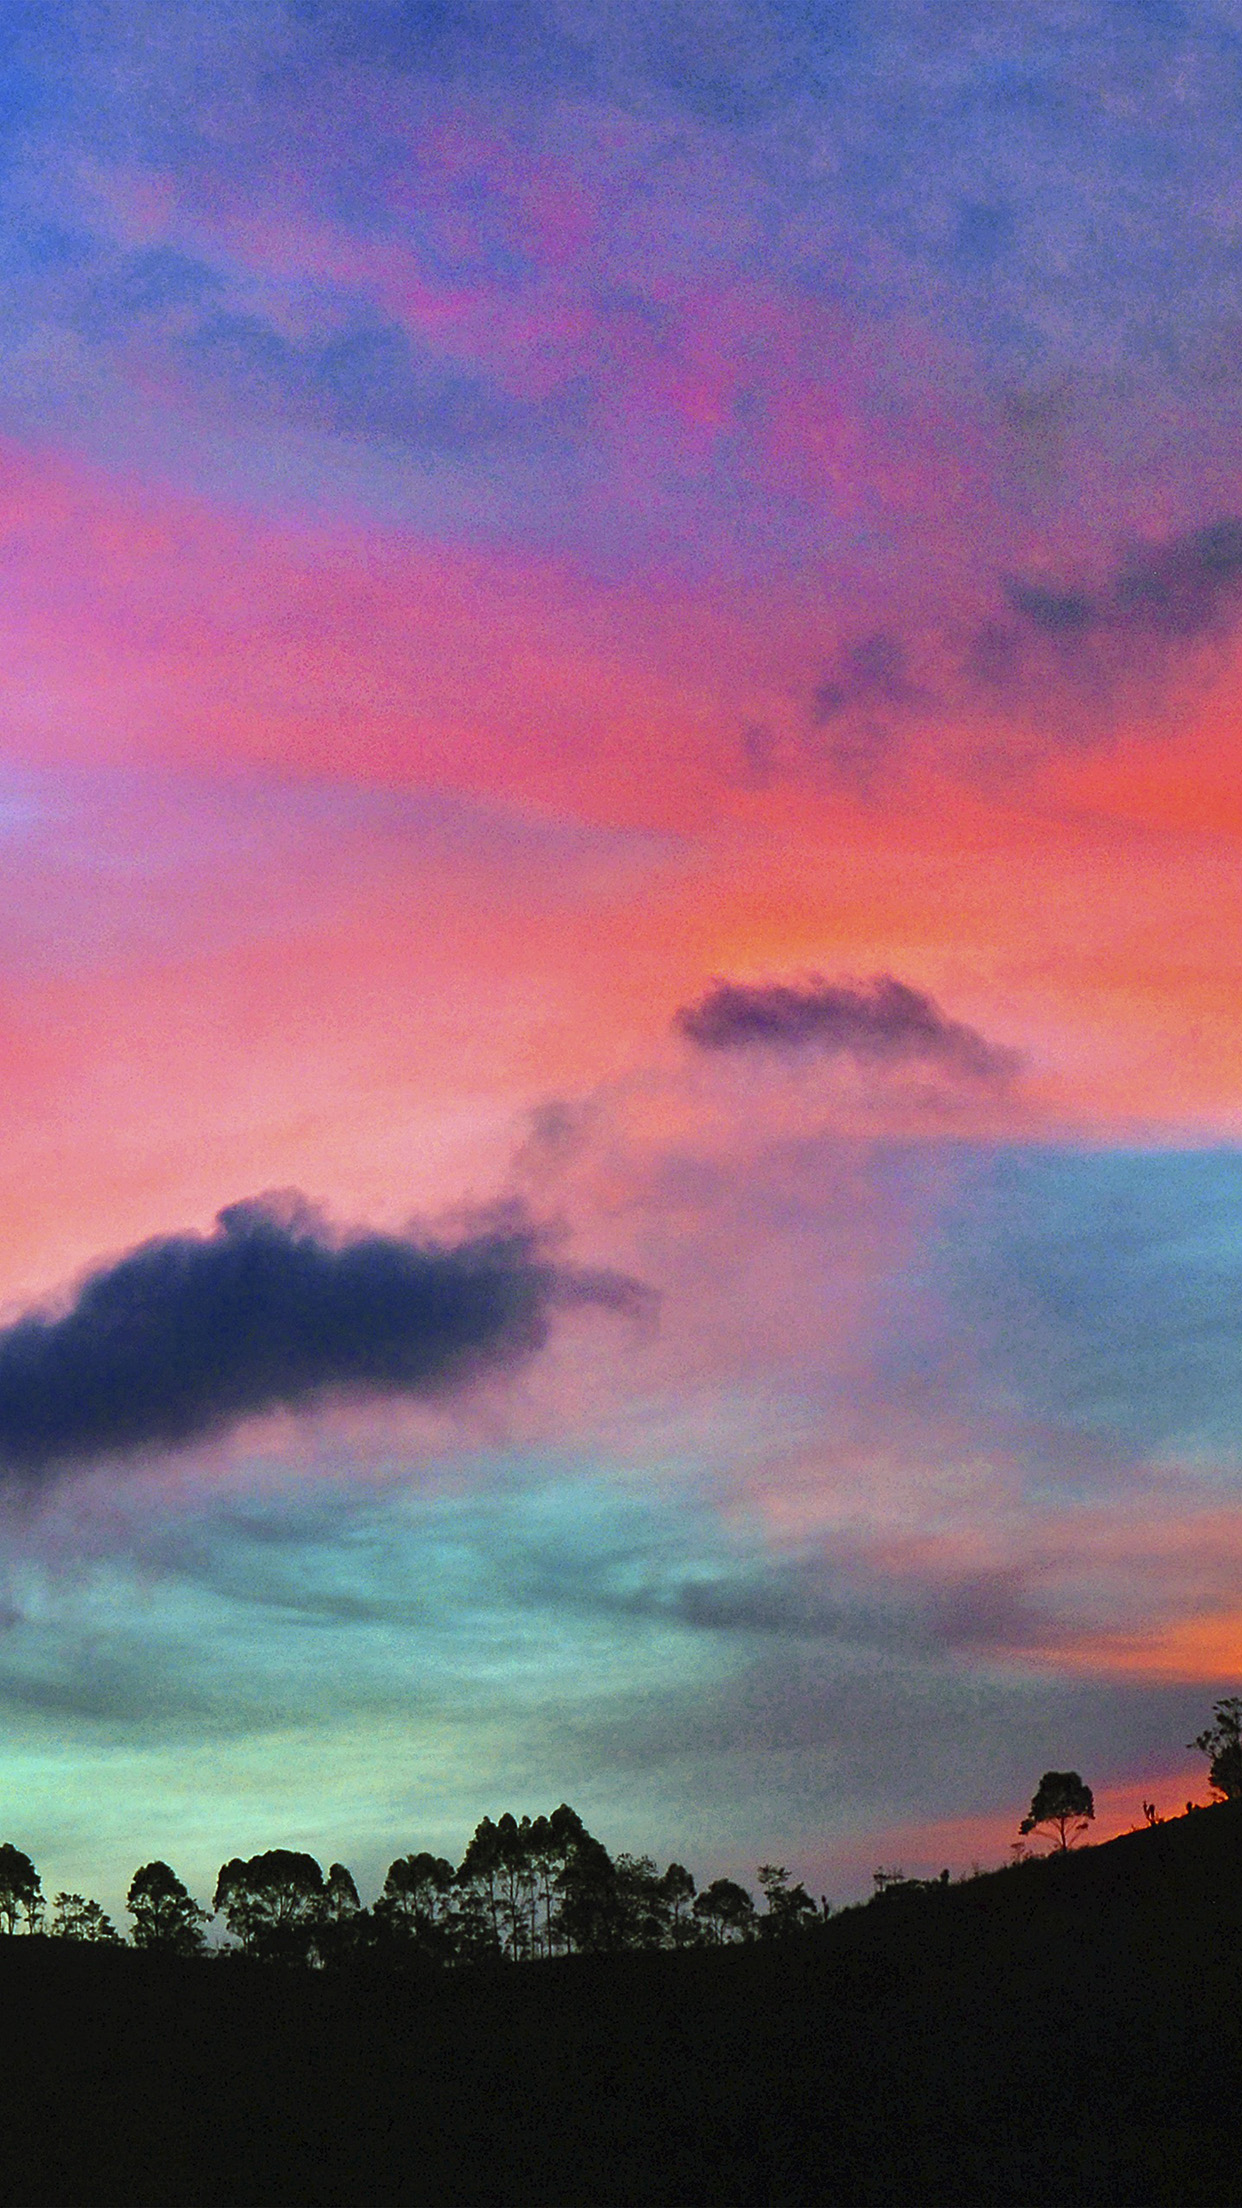 himmel wallpaper iphone,himmel,nachglühen,wolke,natur,roter himmel am morgen